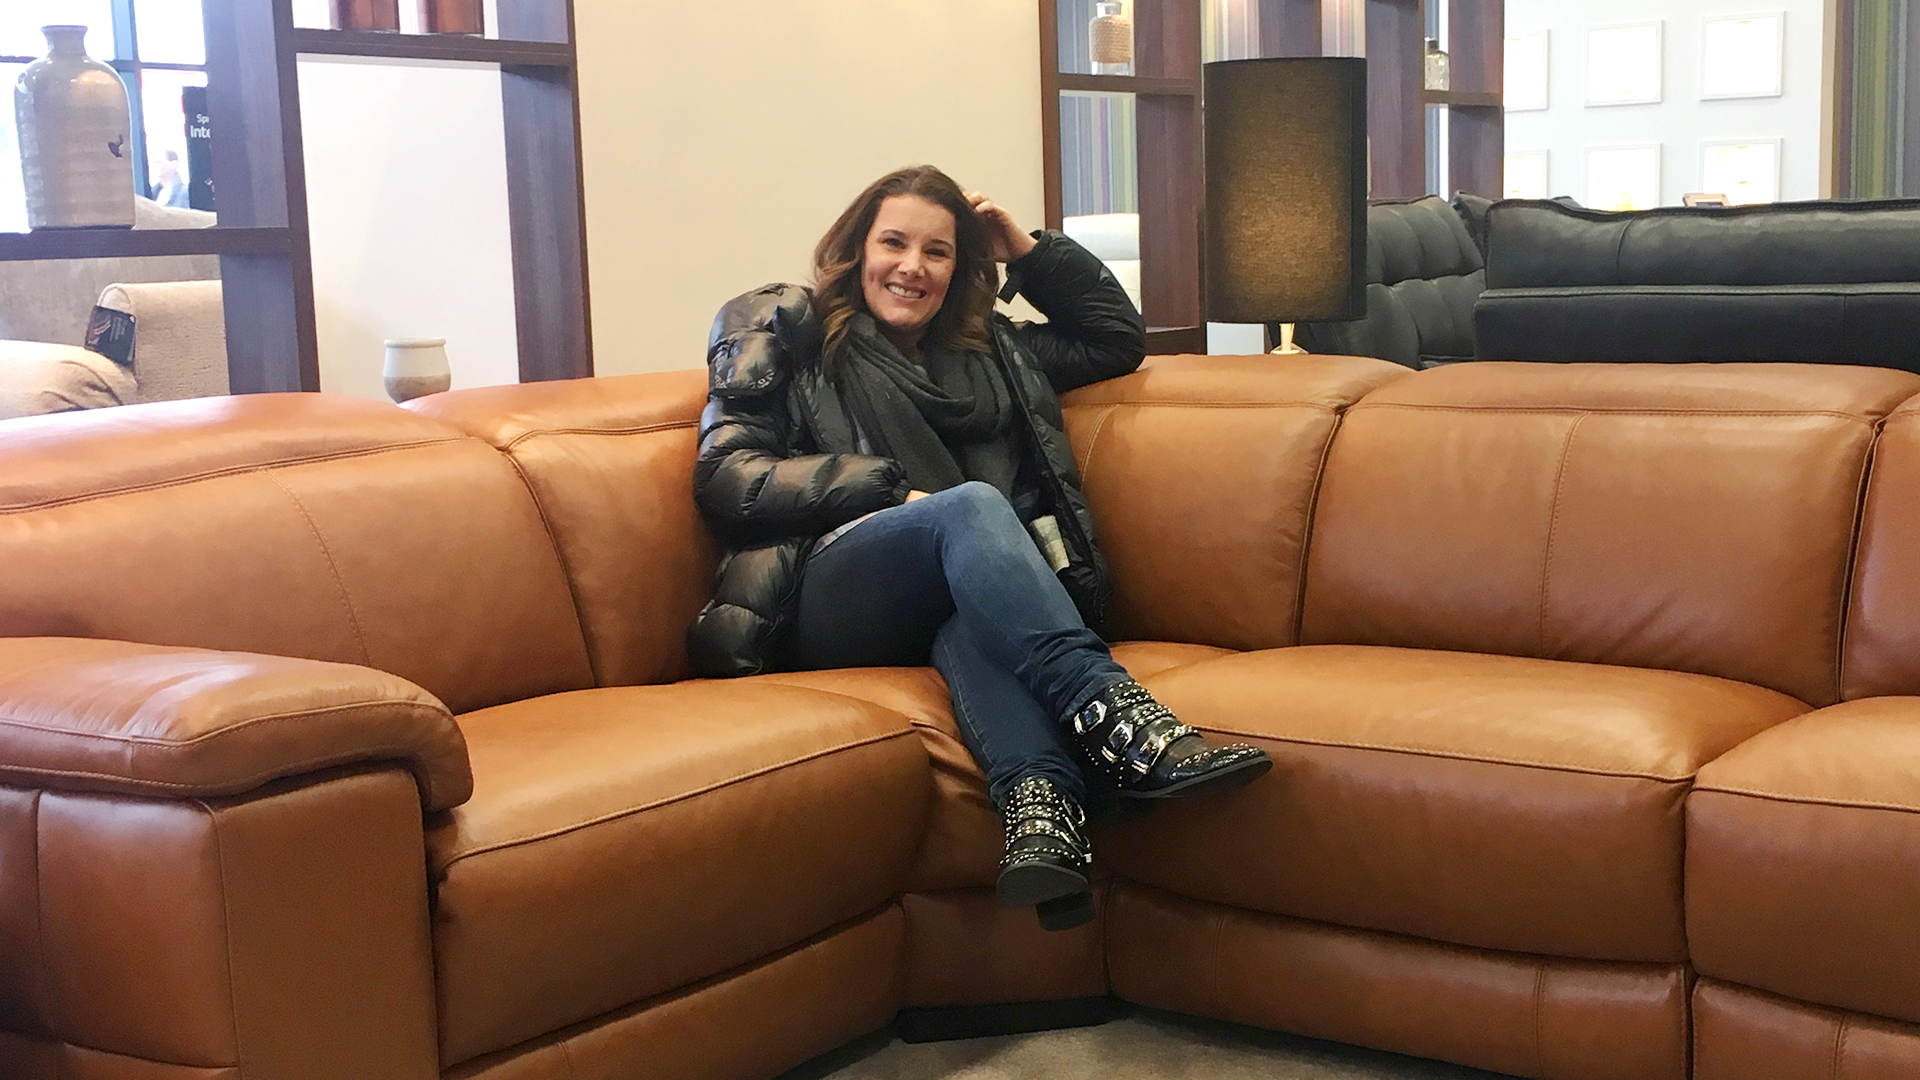 Former X Factor winner Sam Bailey chooses a sofa she loves